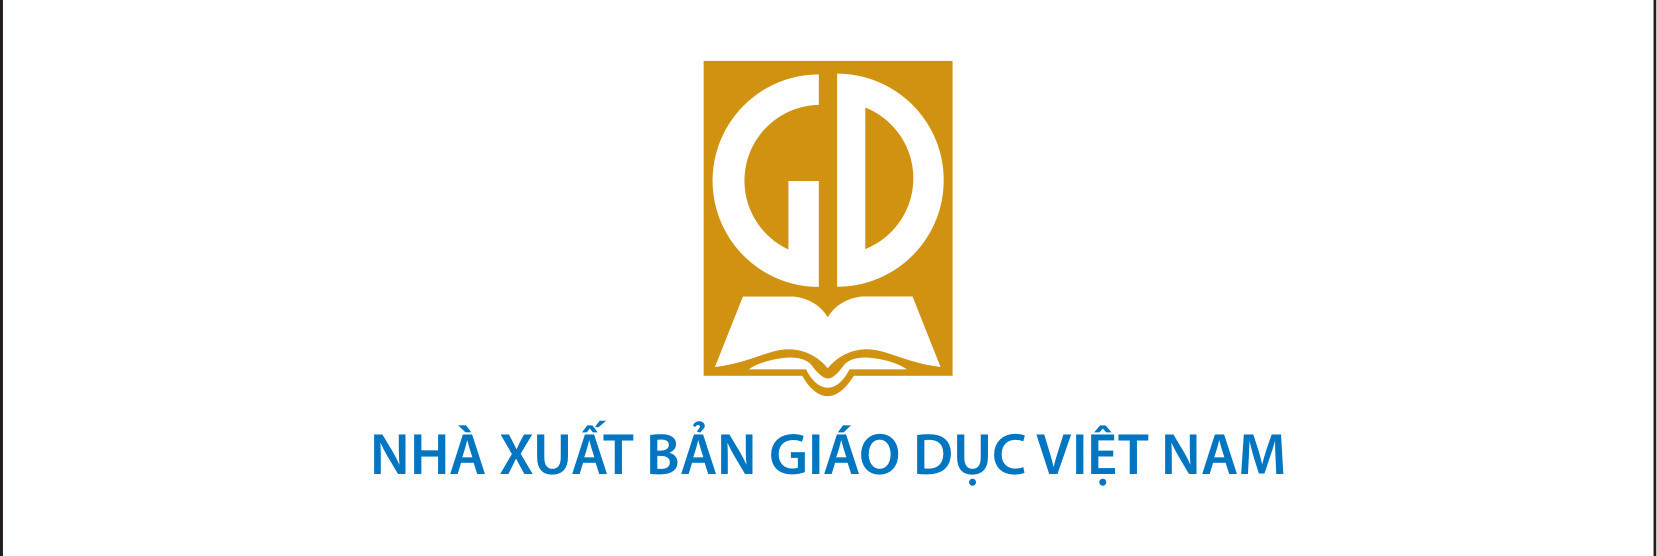 Nhà xuất bản Giáo dục Việt Nam